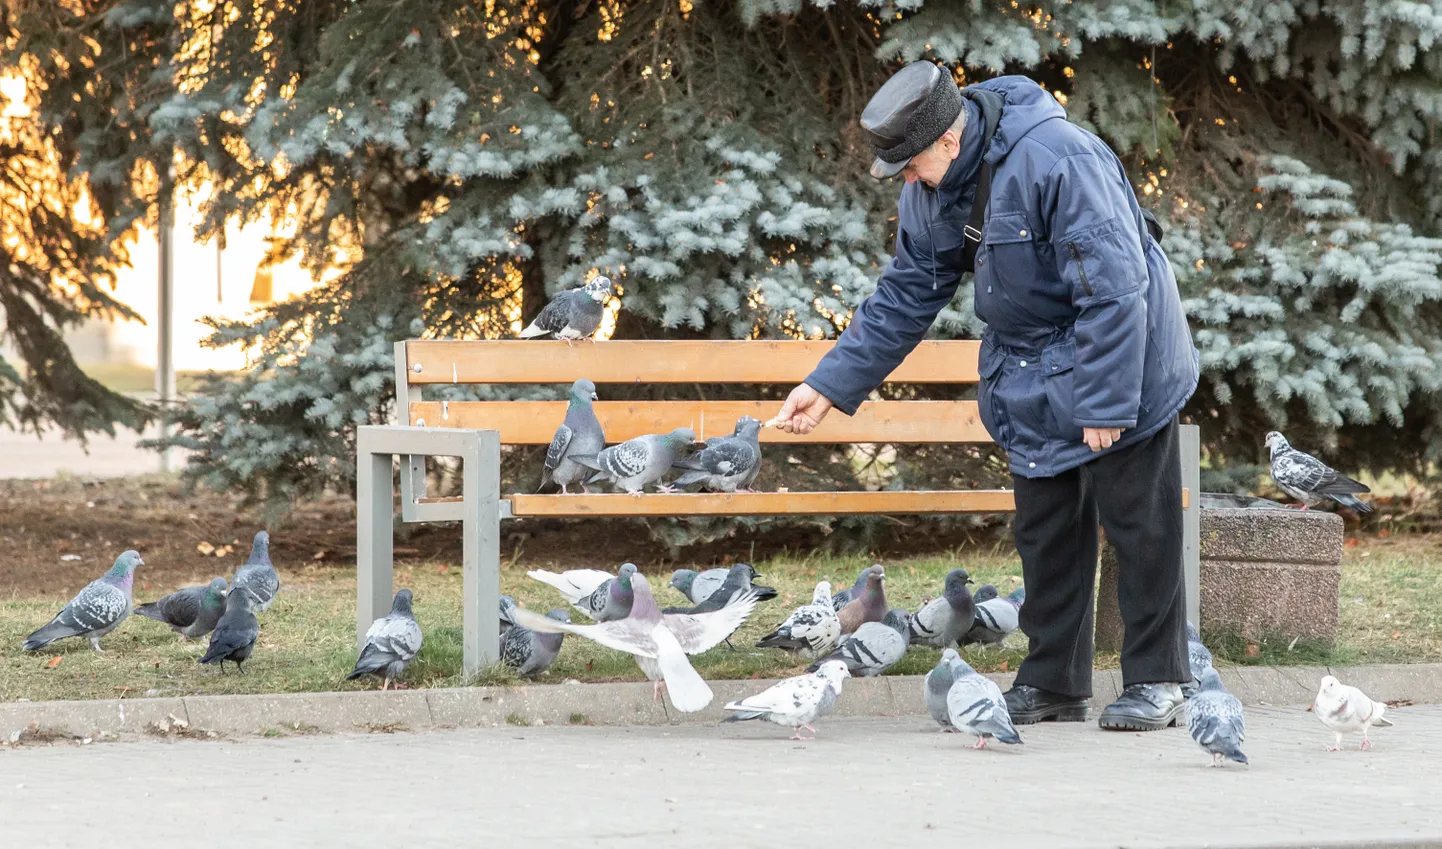 Пожилой мужчина в парке кормит голубей. Фото носит иллюстративный характер и не имеет отношения к описанному в статье.